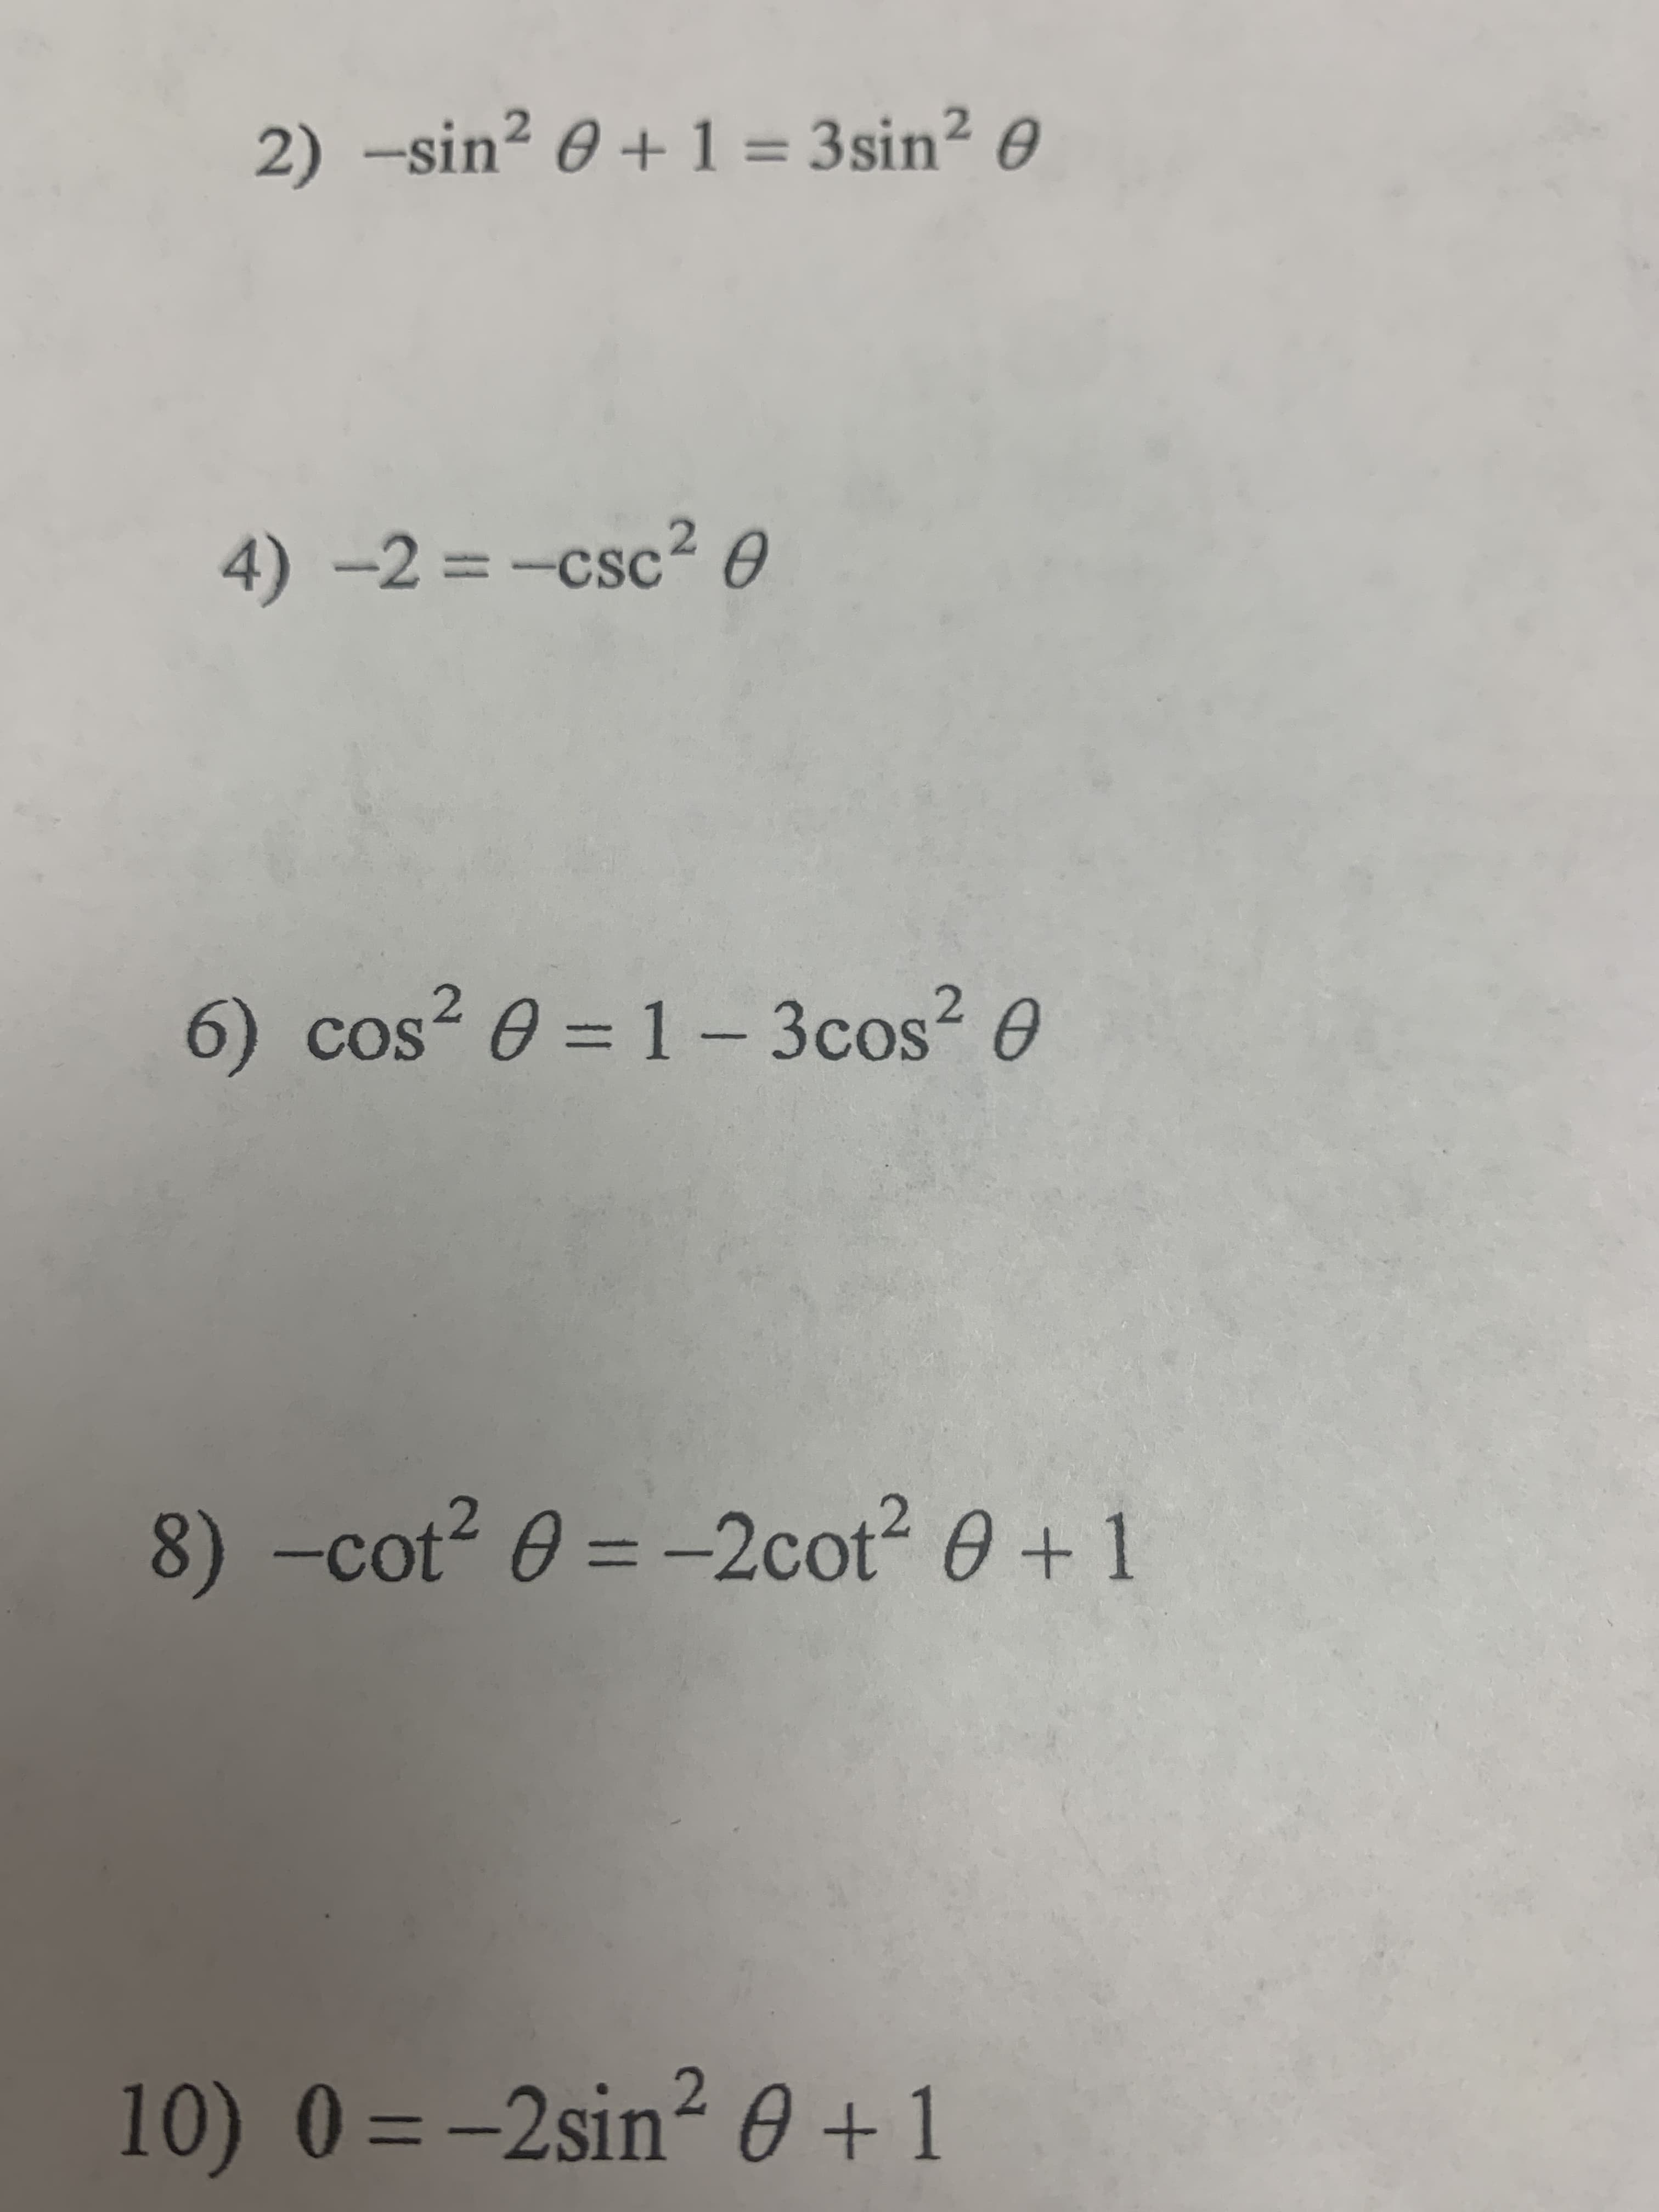 2) -sin² 0 + 1 = 3sin? 0
4)-2%3-csc² O
6) cos² 0 = 1 – 3cos? 0
2.
2.
8) -cot2 0 = -2cot2 0+1
10) 0=-2sin² 0 + 1
%3D
